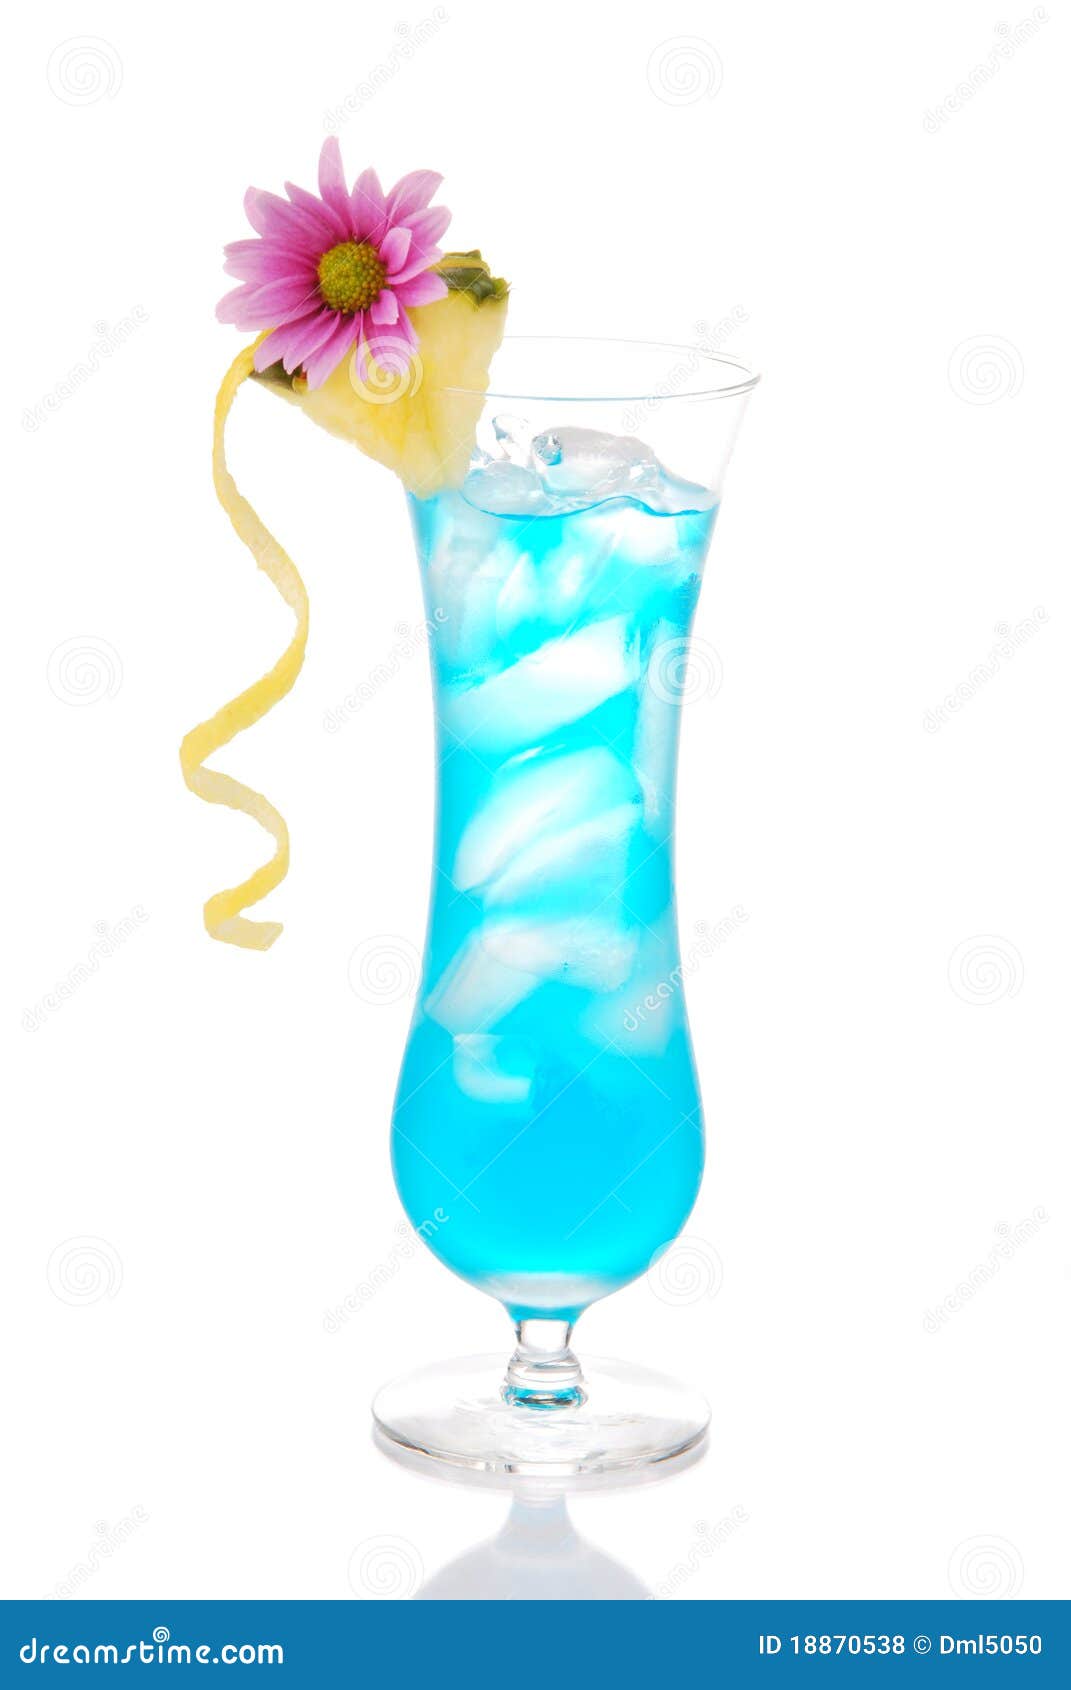 蓝色夏威夷鸡尾酒图片,红粉佳人鸡尾酒 - 伤感说说吧